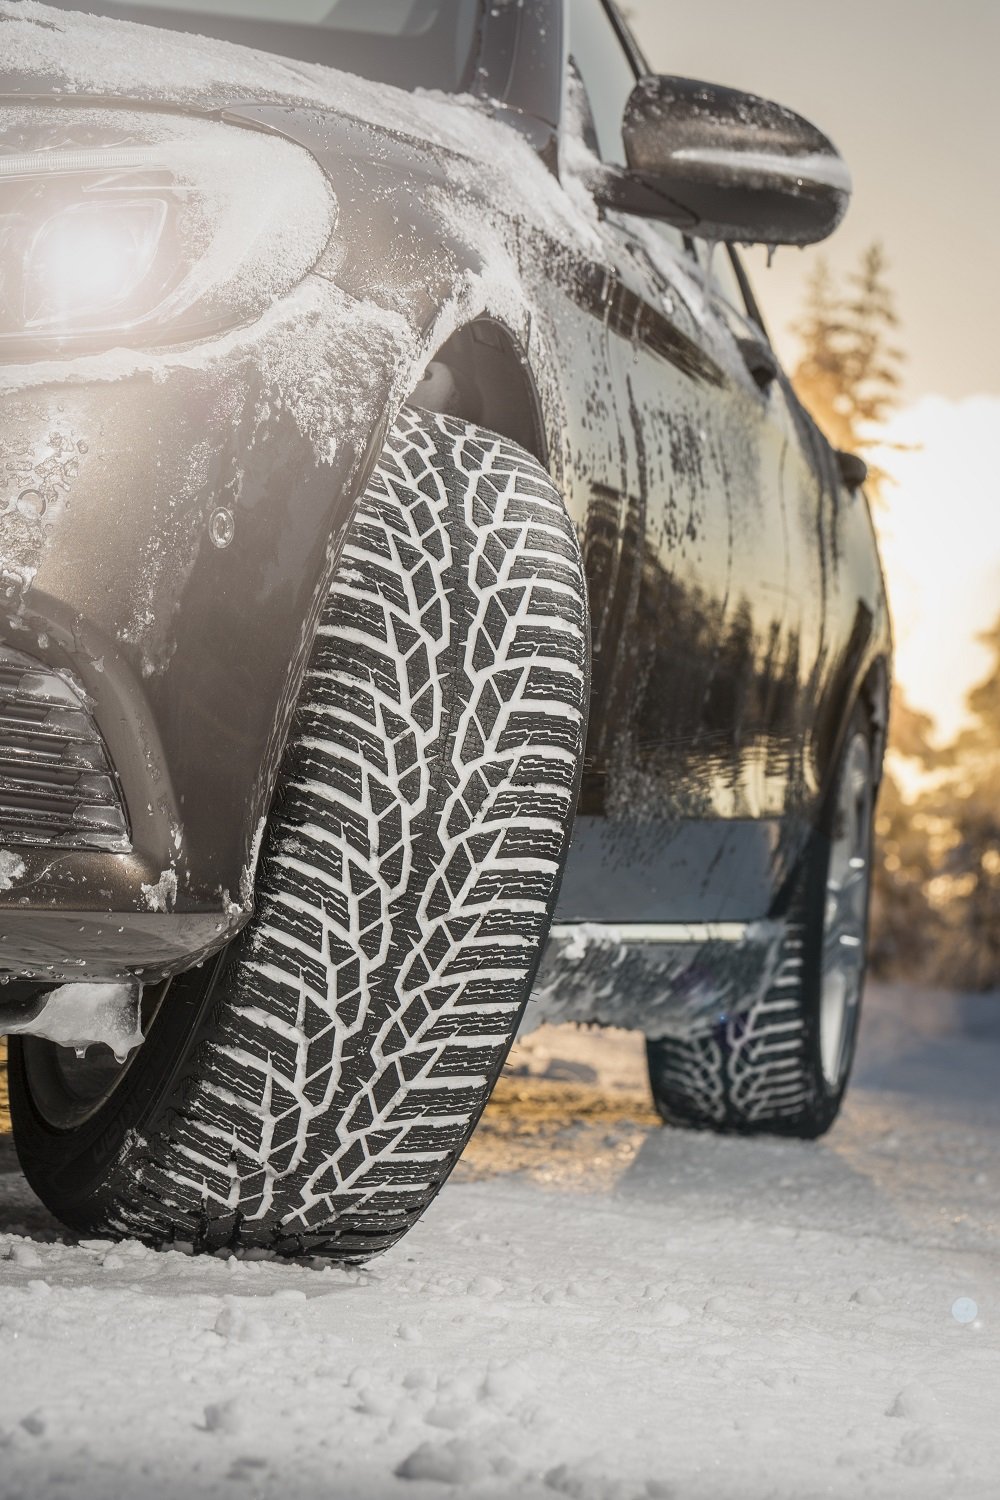 Zimní pneumatiky zlepší ovladatelnost vašeho vozu i na suché silnici